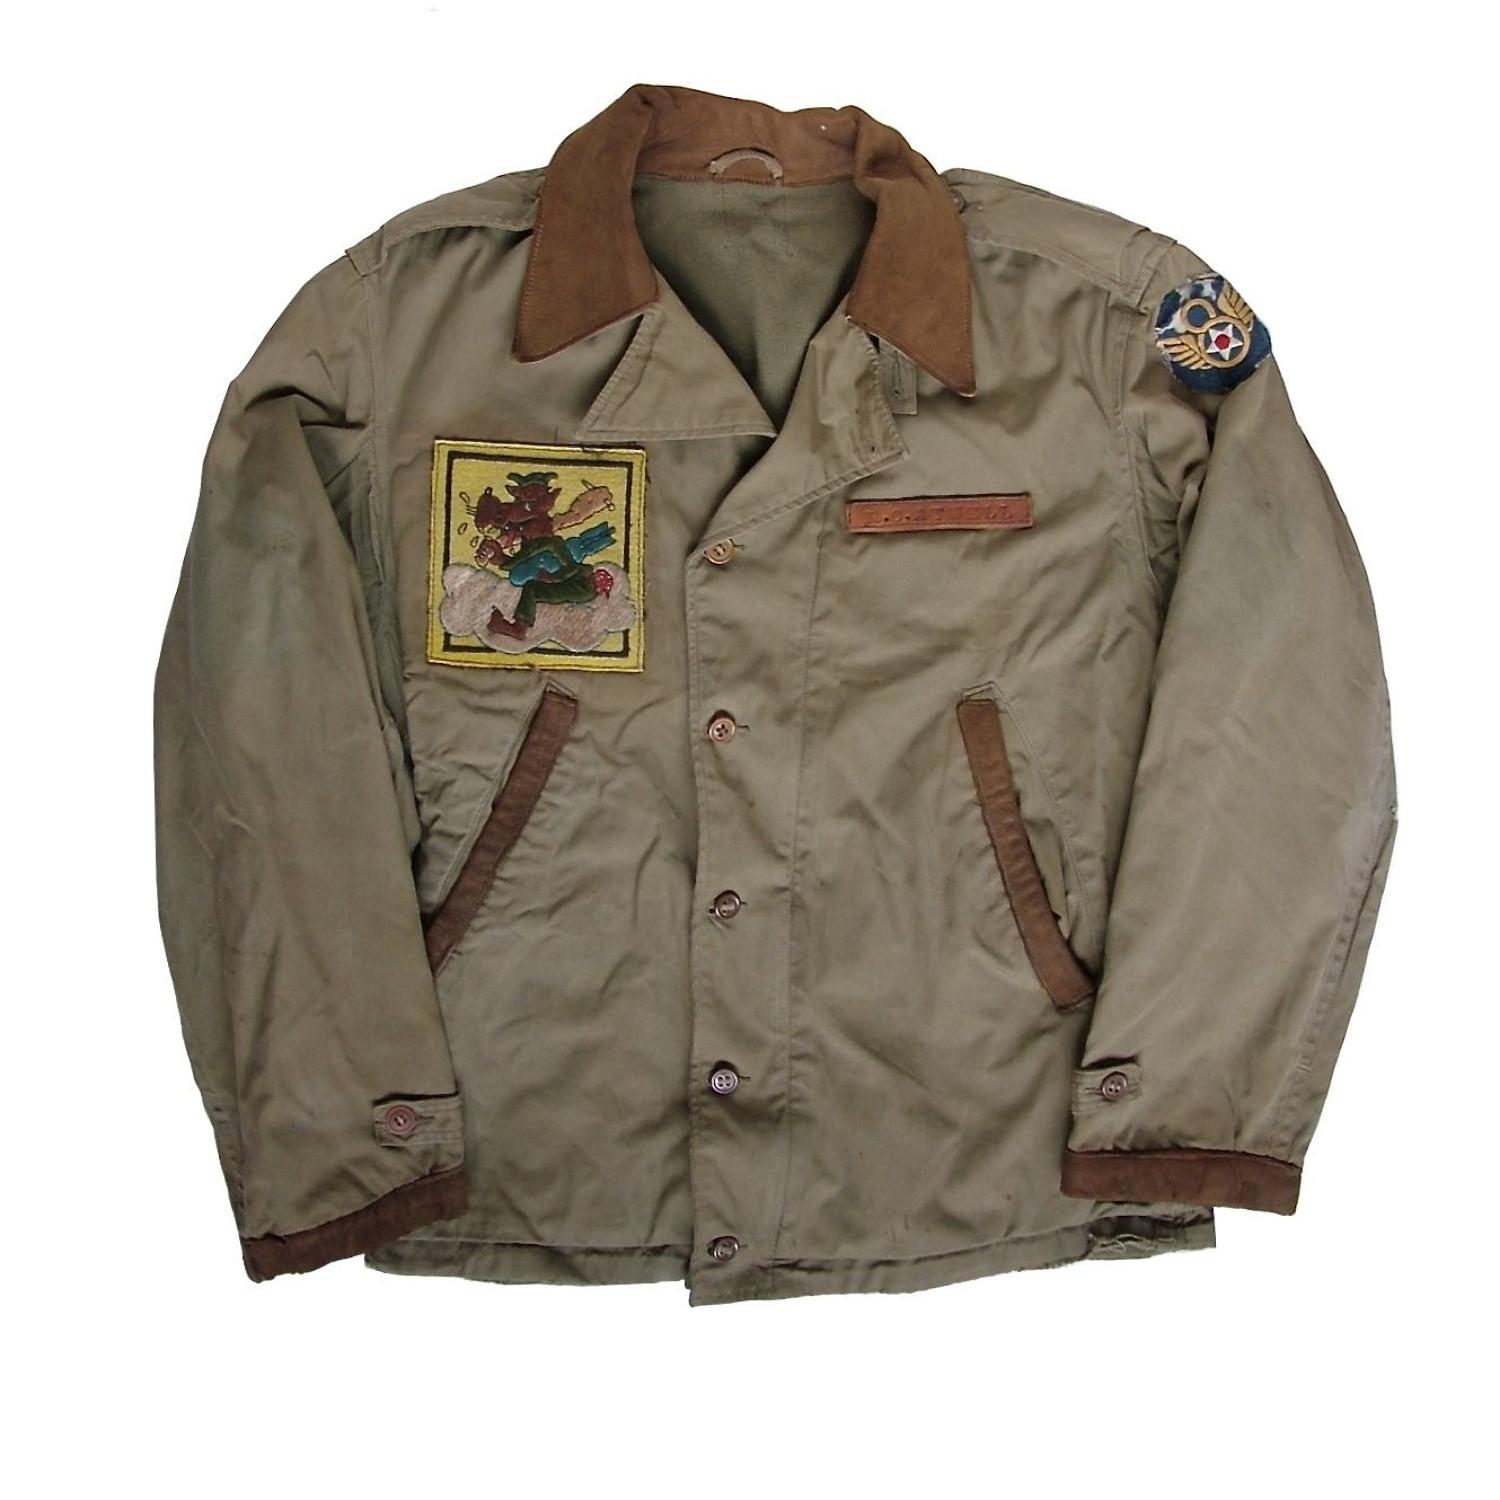 USAAF 474th bomb squadron M-41 field jacket